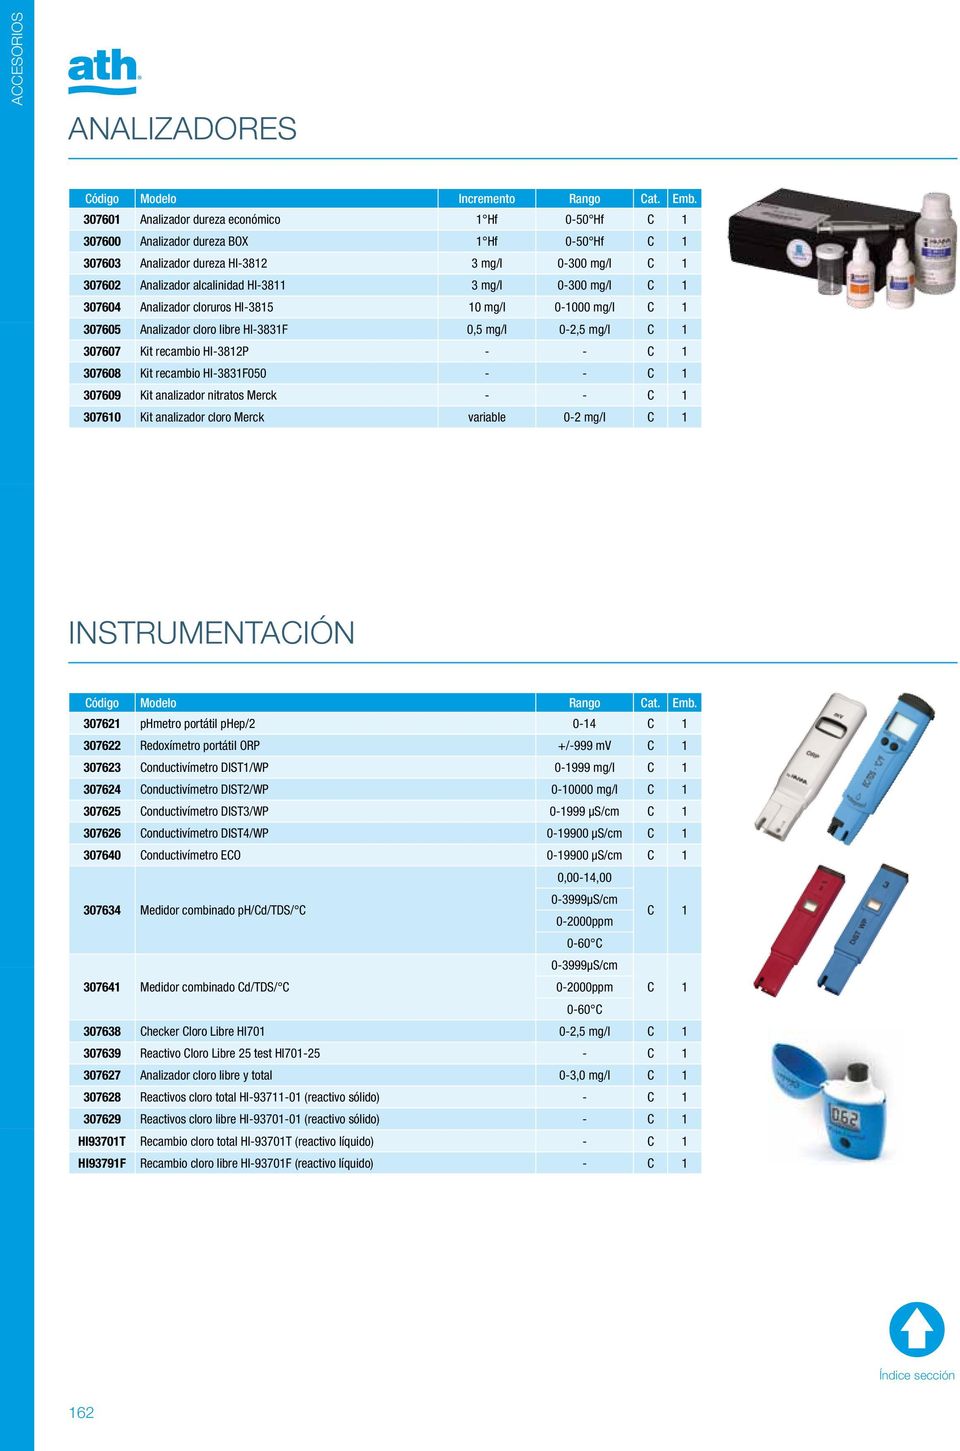 0-300 mg/l C 1 307604 Analizador cloruros HI-3815 10 mg/l 0-1000 mg/l C 1 307605 Analizador cloro libre HI-3831F 0,5 mg/l 0-2,5 mg/l C 1 307607 Kit recambio HI-3812P - - C 1 307608 Kit recambio